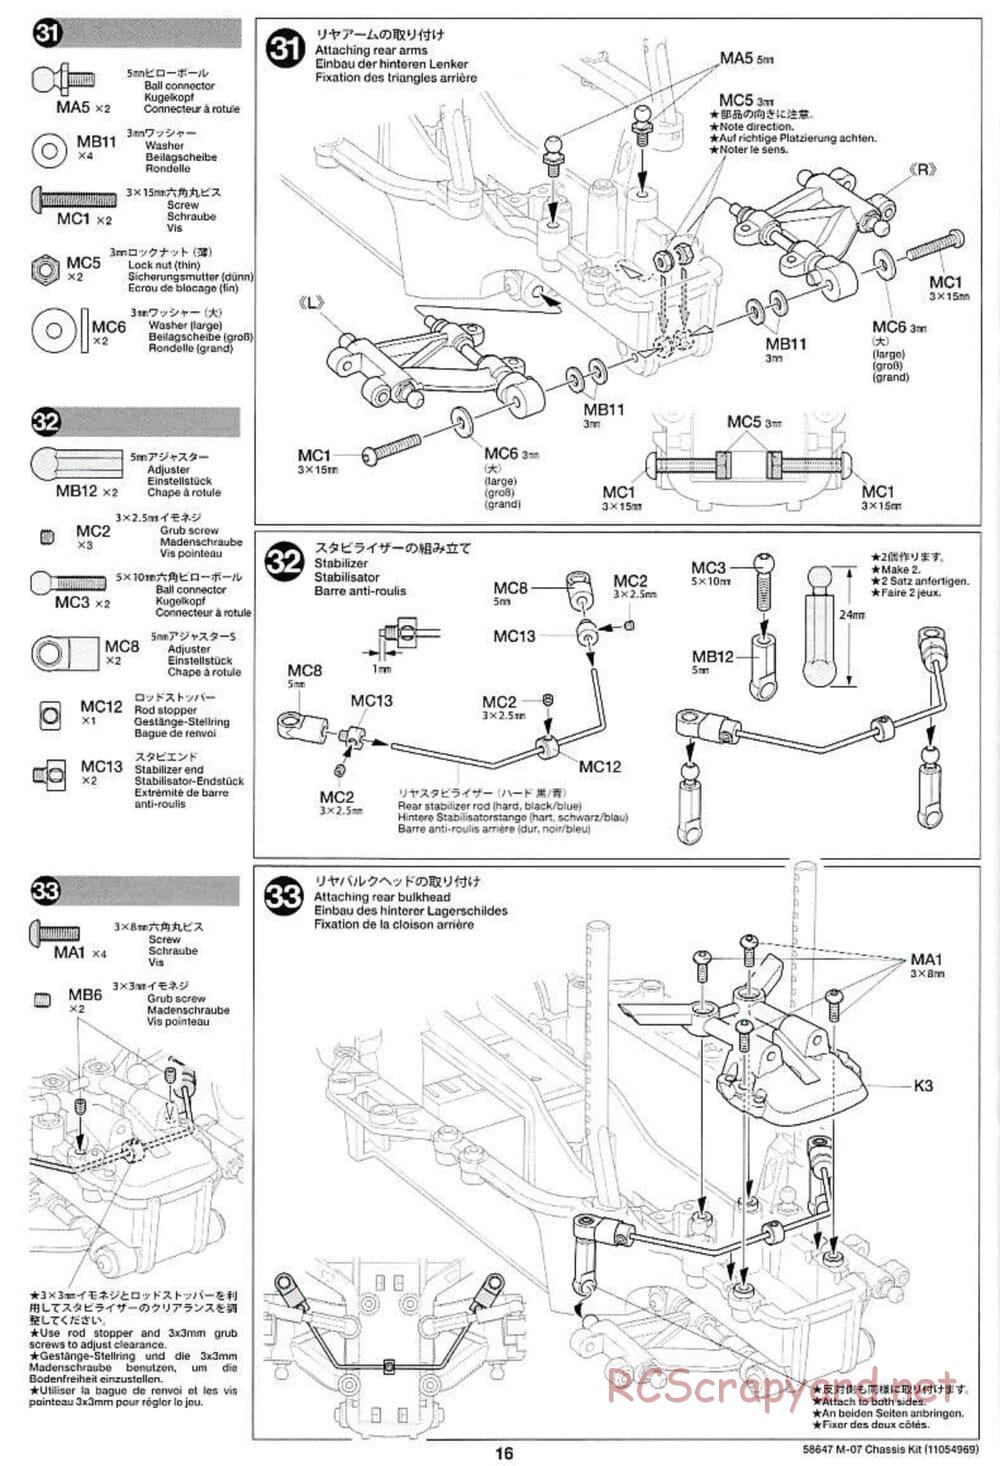 Tamiya - M-07R Chassis - Manual - Page 16